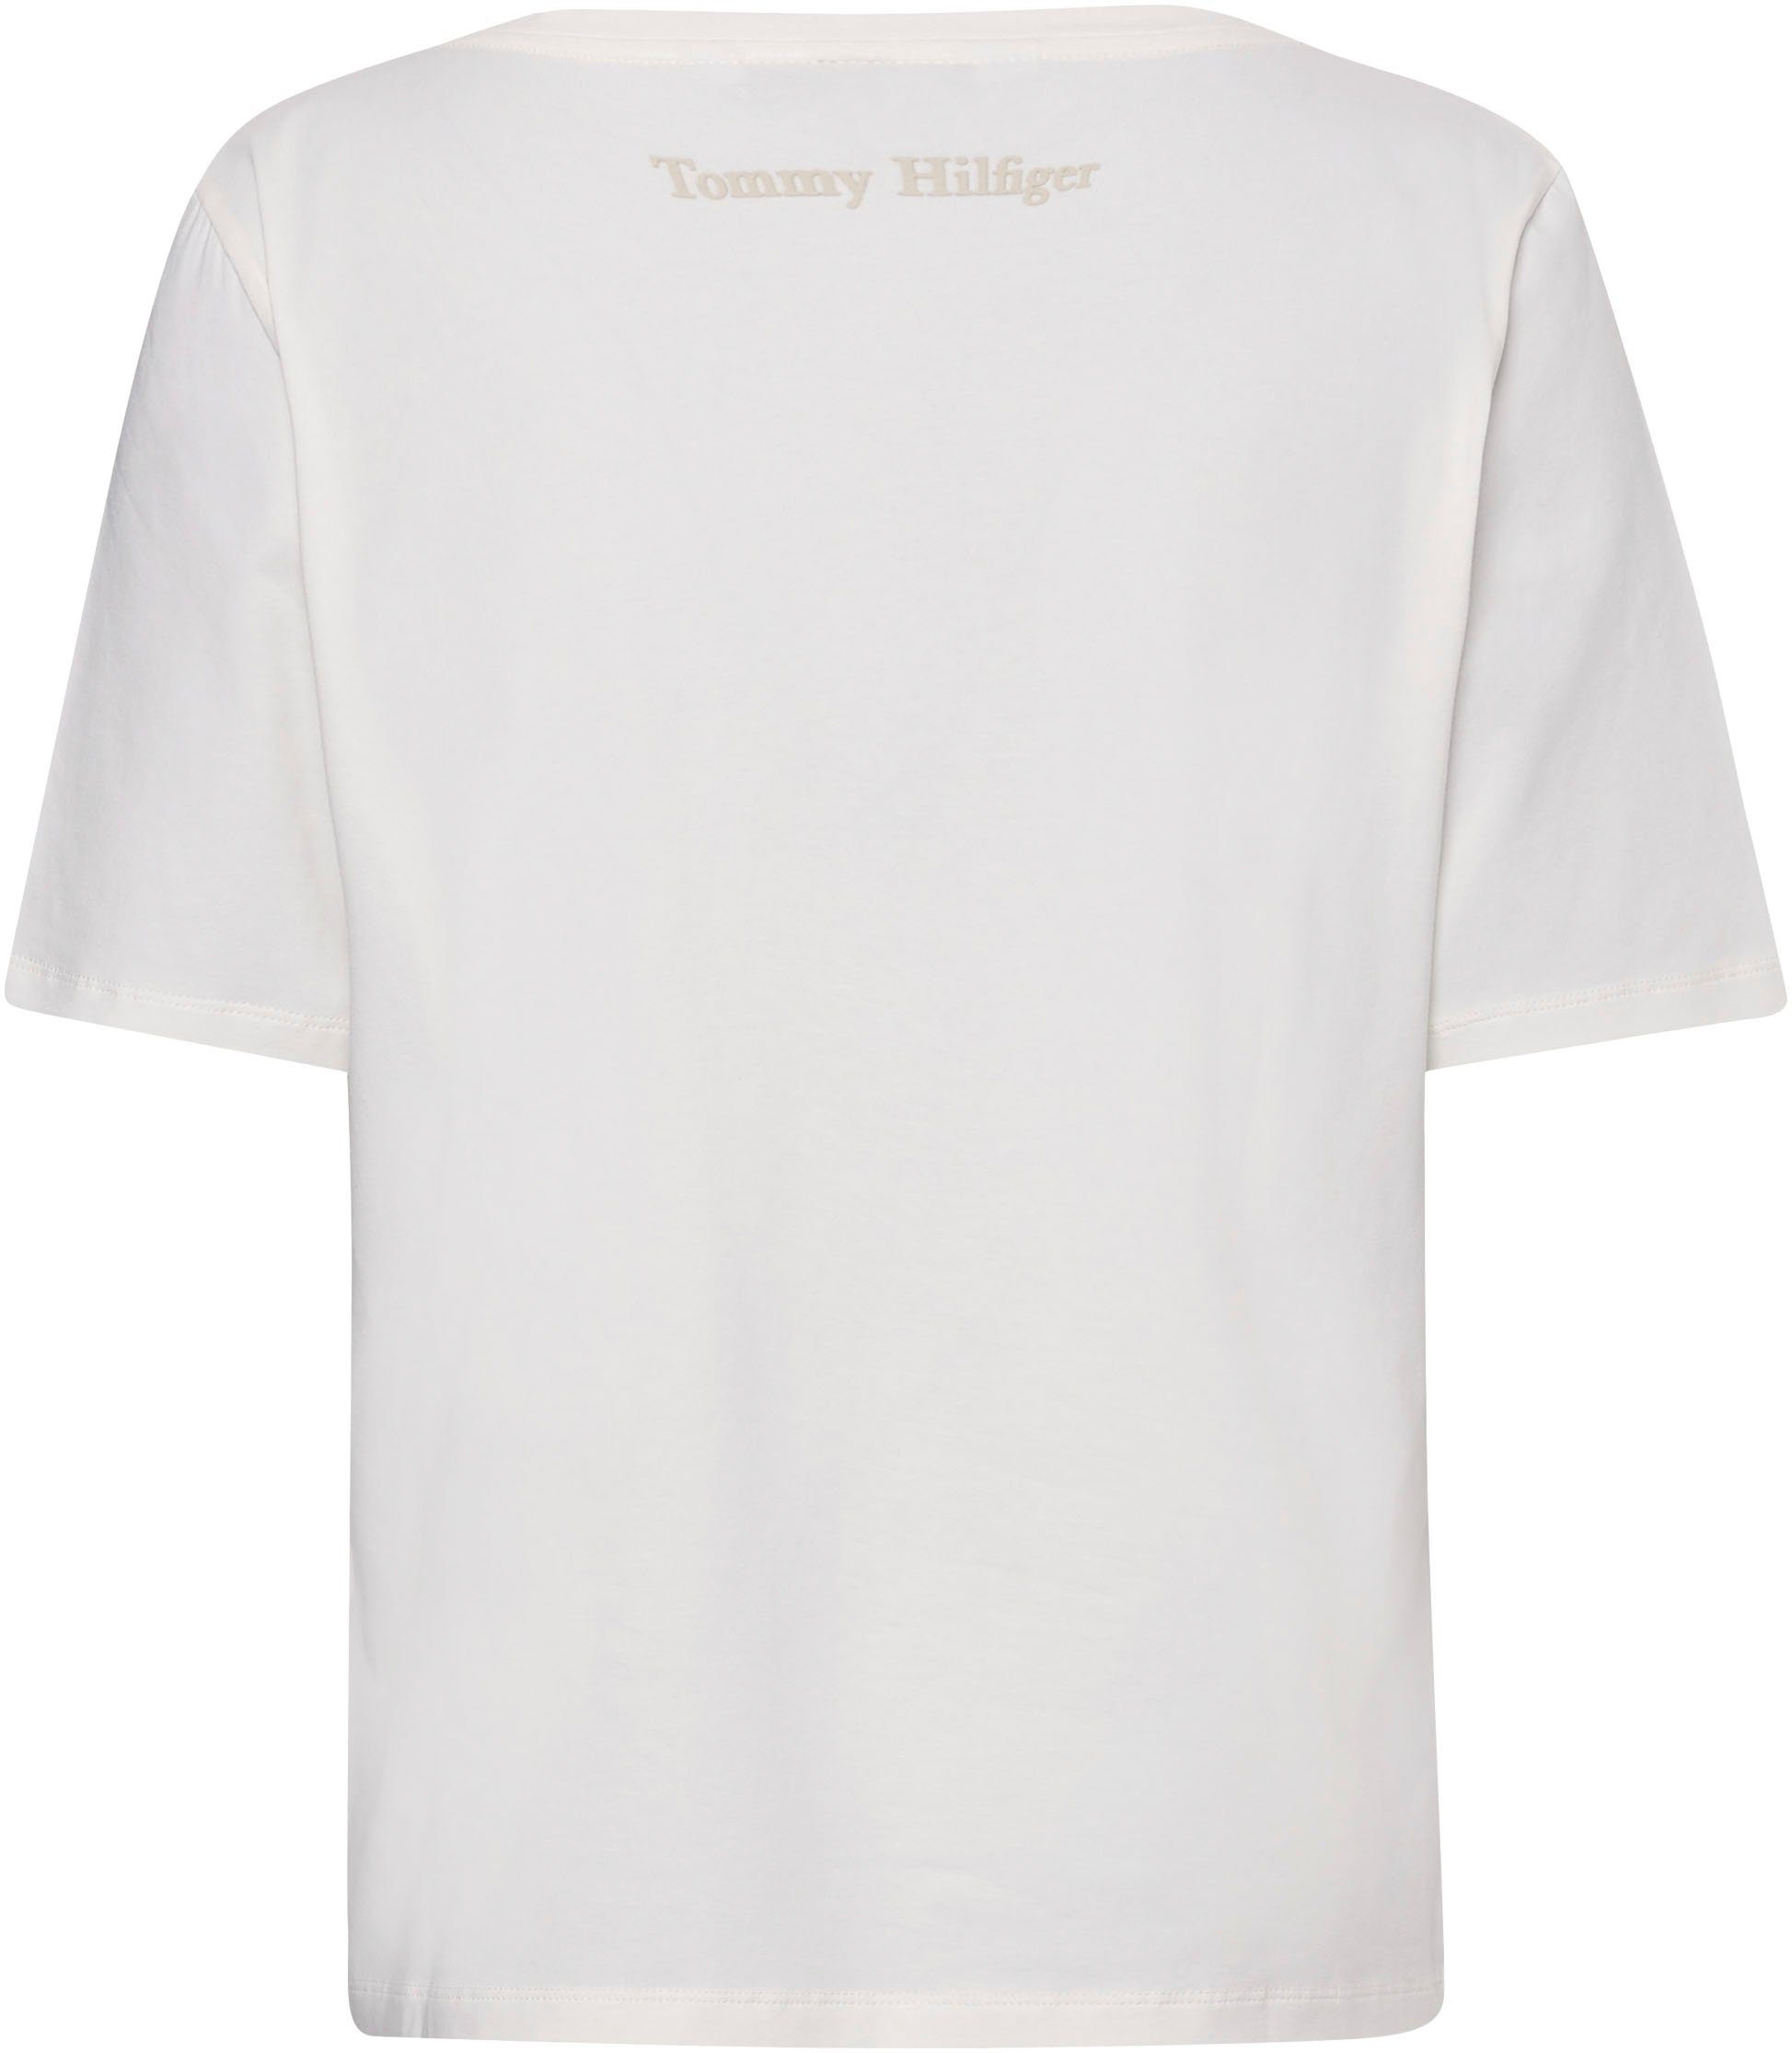 Hilfiger mit ecru Markenlabel T-Shirt Tommy